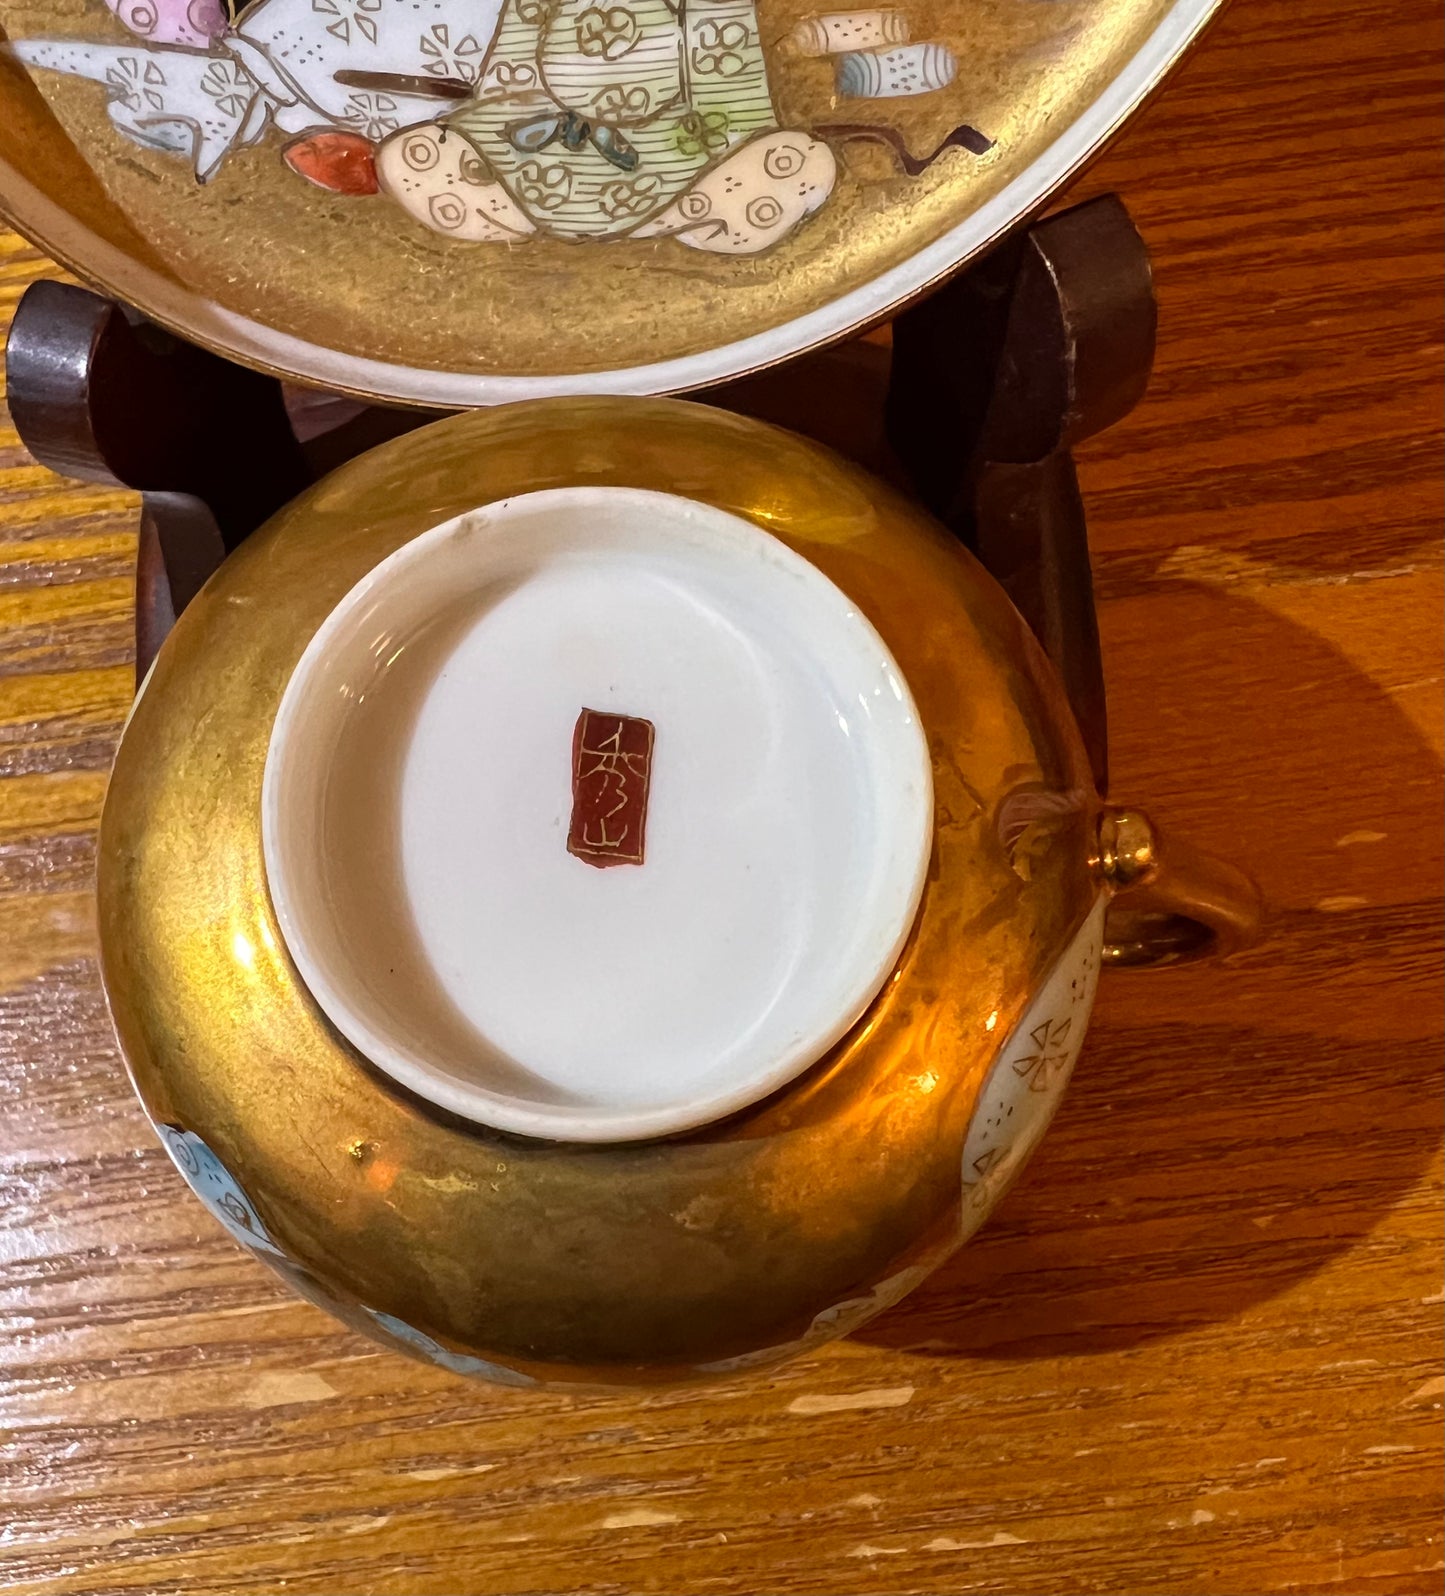 Satsuma Teacup and Saucer